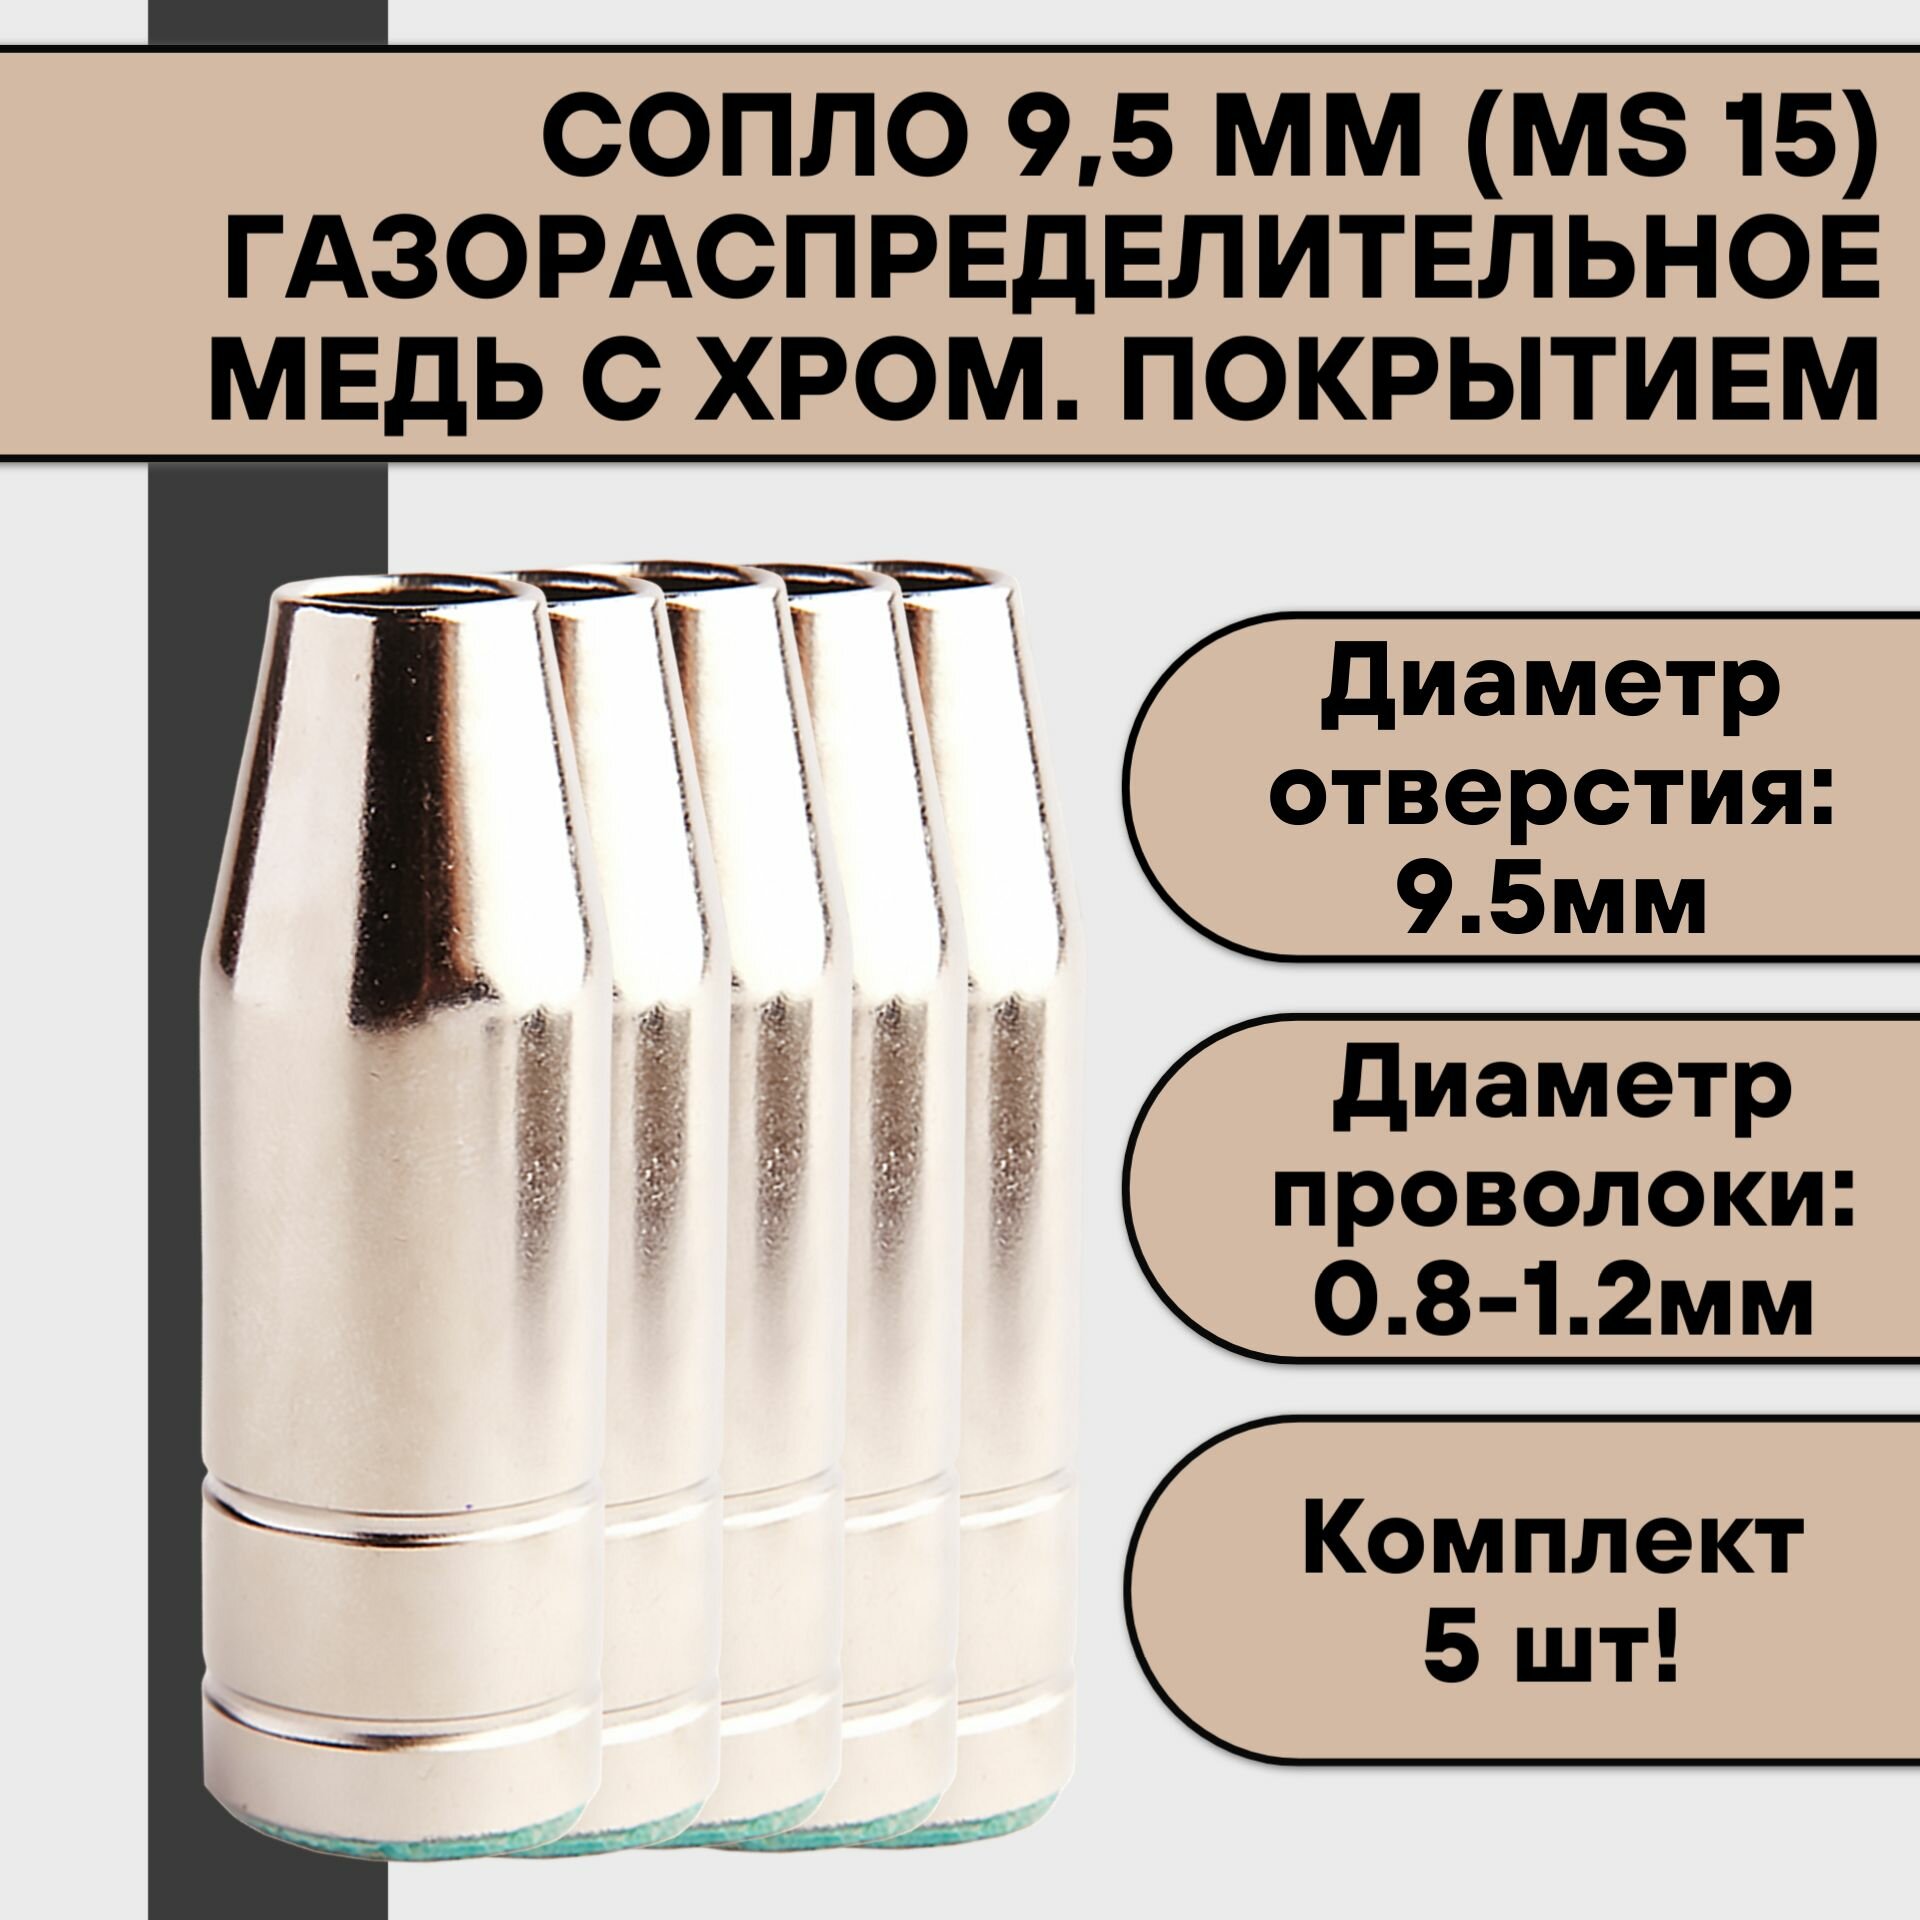 Сопло газораспределительное 95 мм (MS 15) (5 шт)